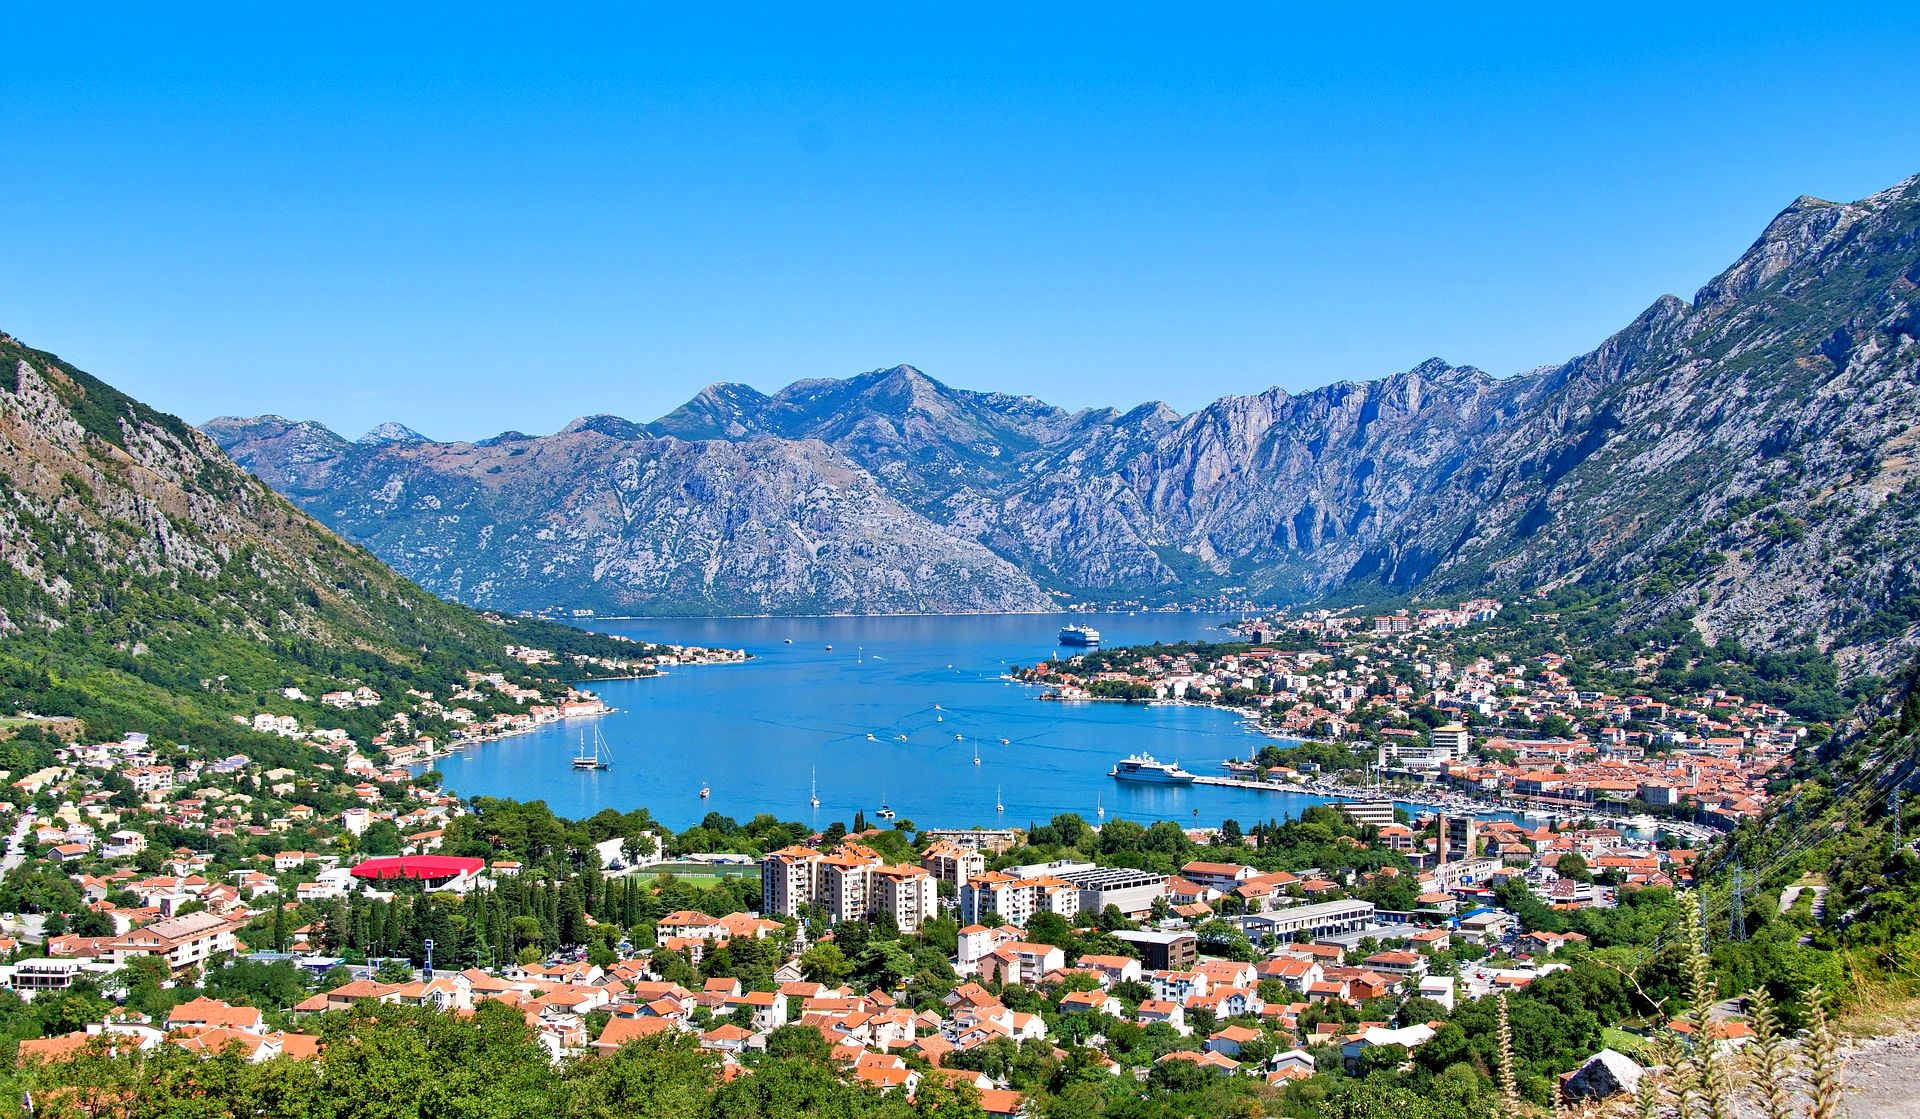 Kotor, Montenegro on the Adriatic Coast